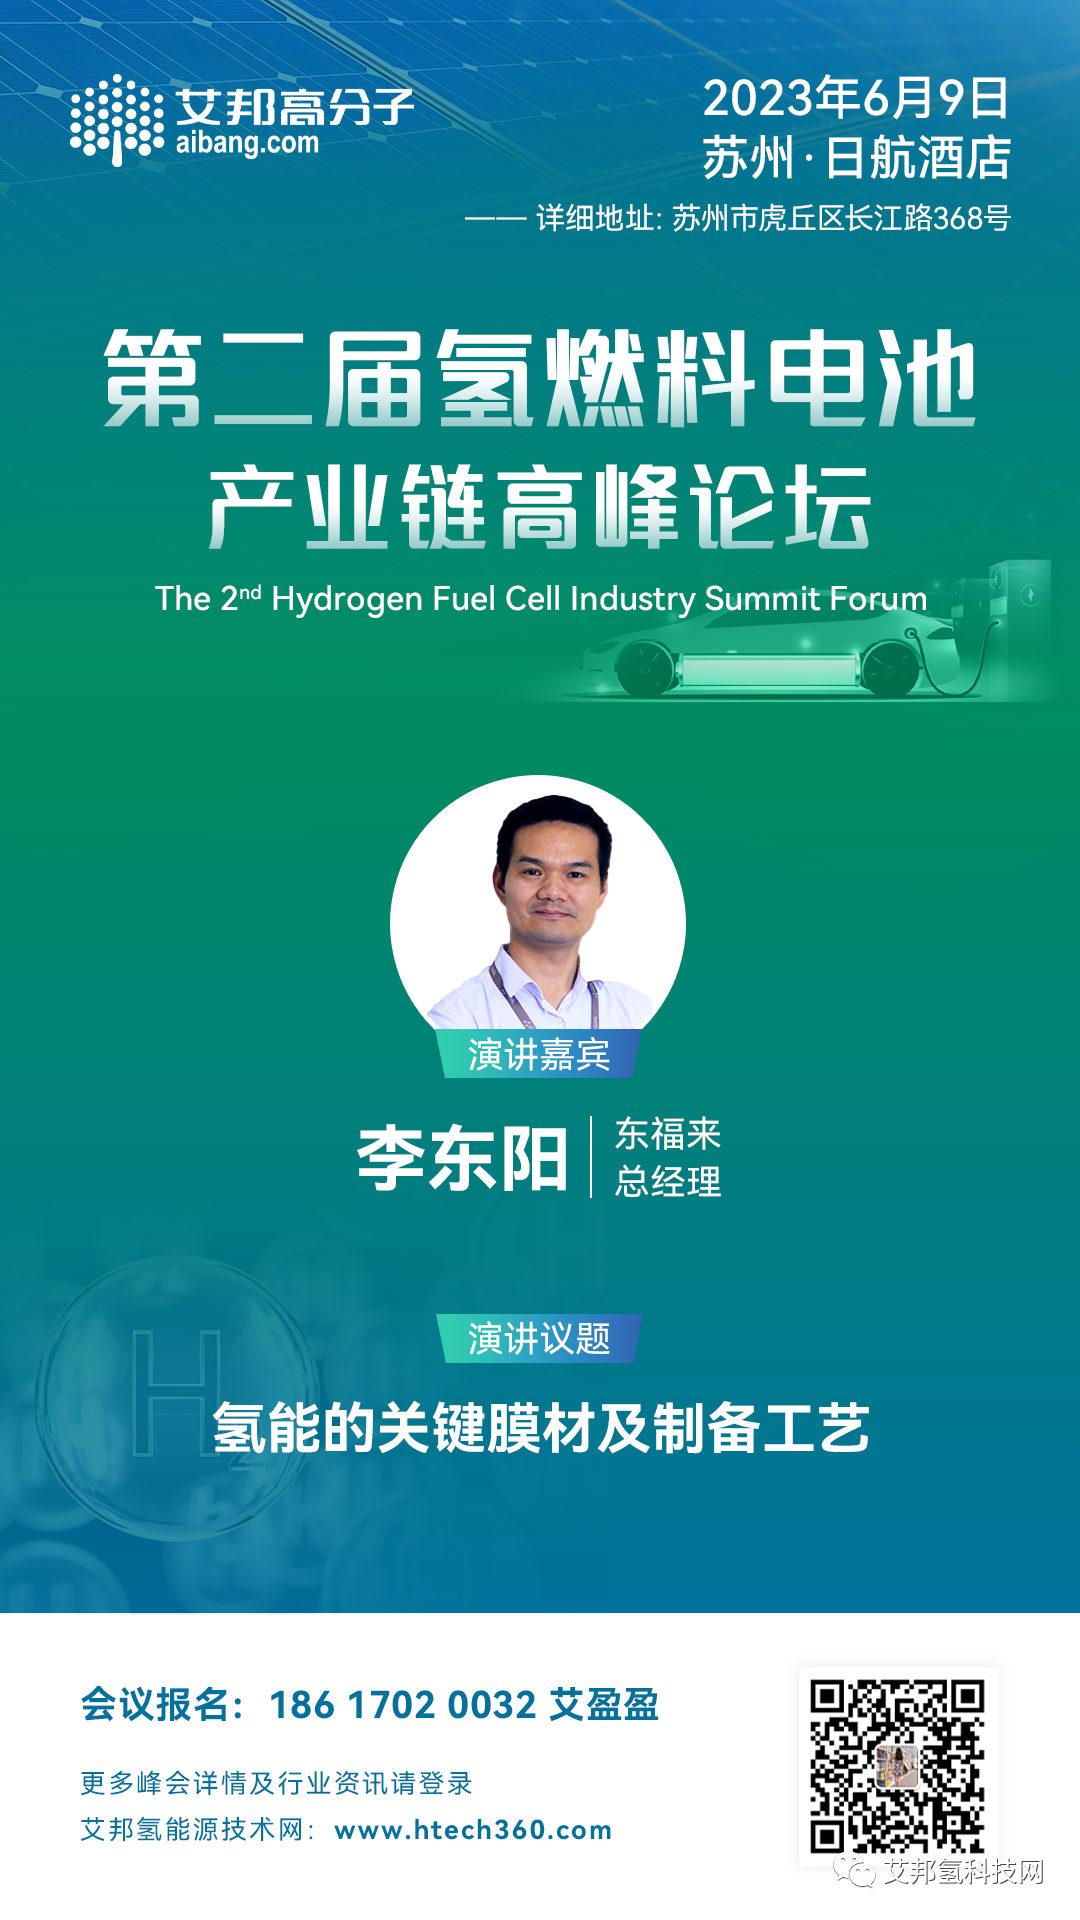 东福来将出席氢燃料电池产业链高峰论坛并做主题演讲